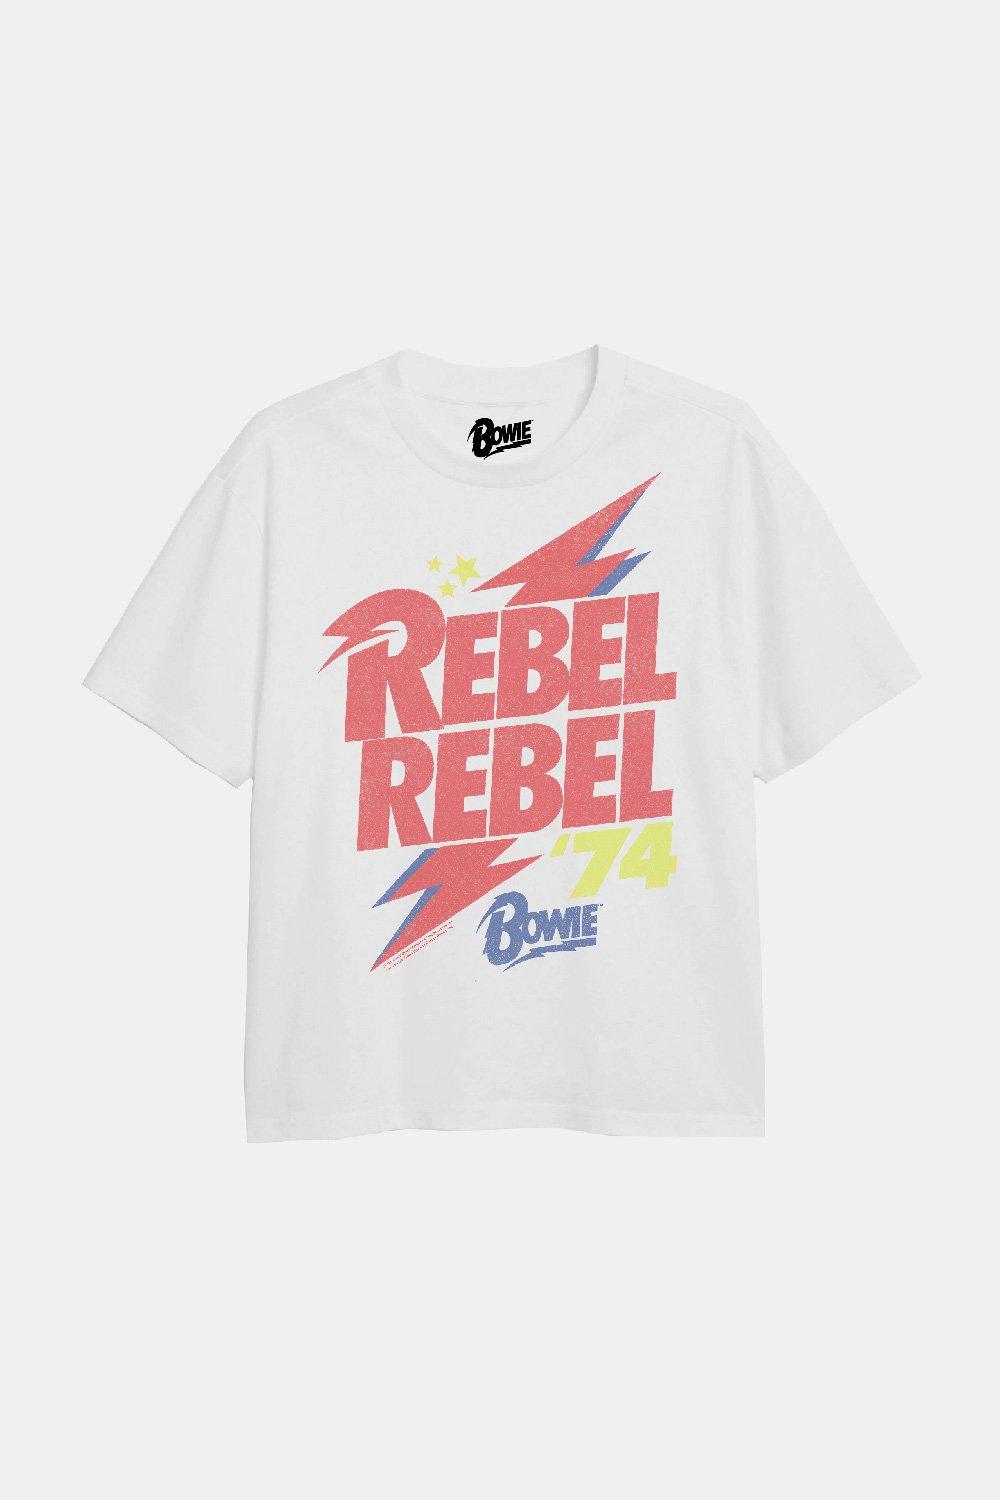 сумка дэвид боуи бежевый Футболка Rebel Rebel для девочек David Bowie, белый